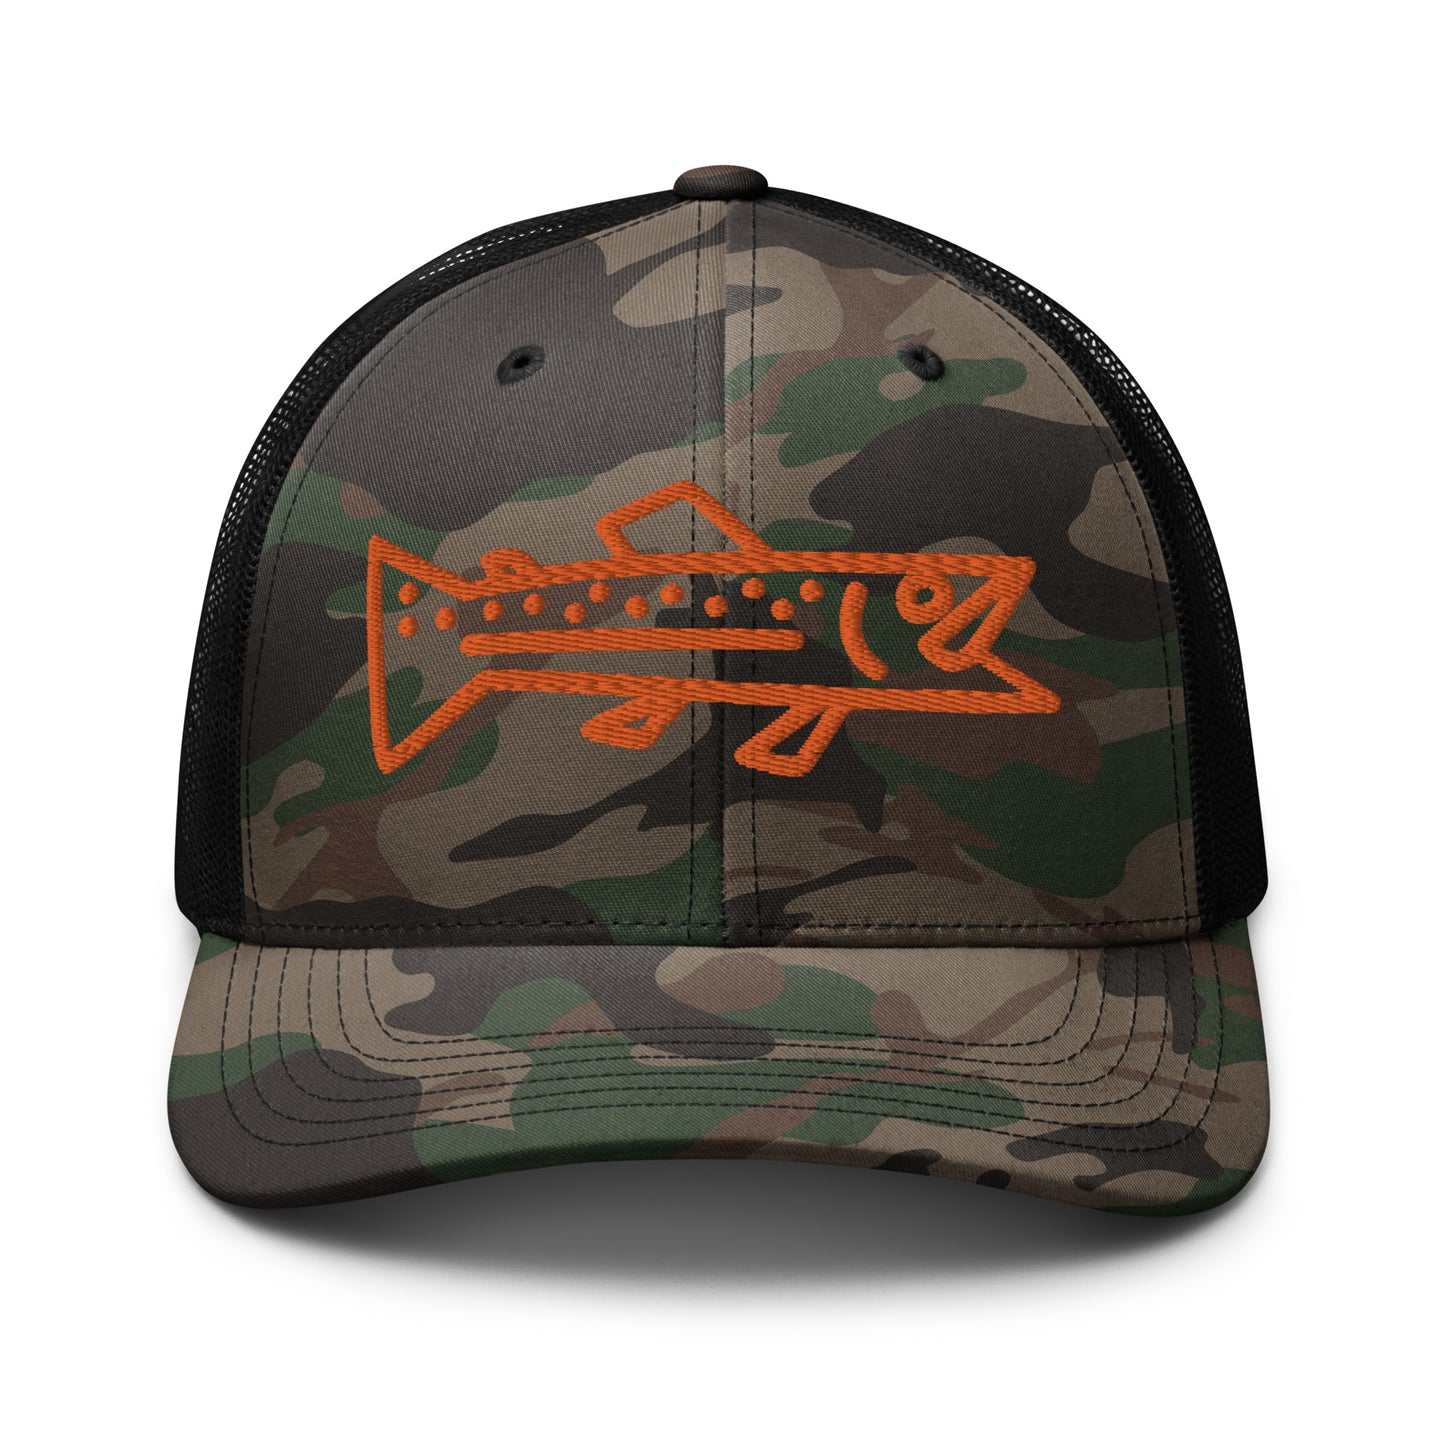 Trout Hunter trucker hat